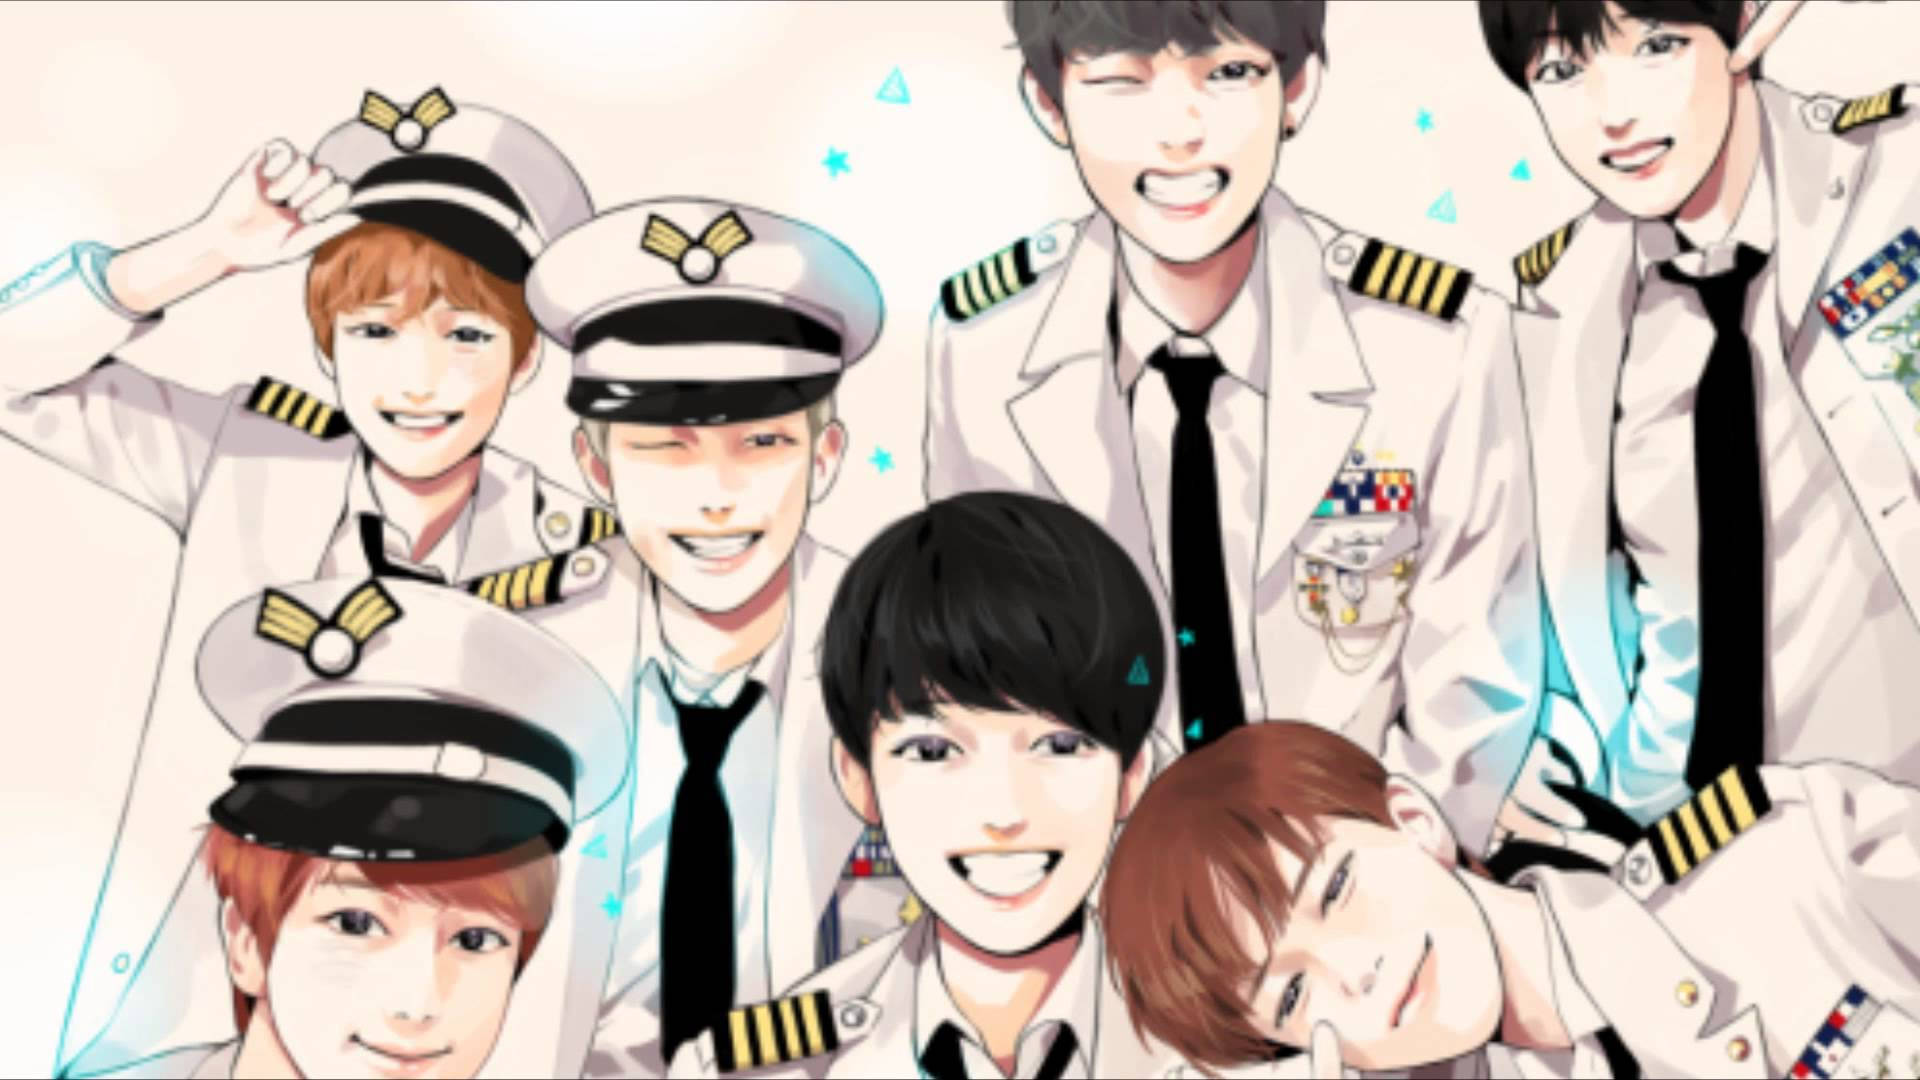 Các nhân vật trong trang phục quân đội của nhóm nhạc BTS đã trở thành biểu tượng của sức mạnh và động lực cho fan hâm mộ. Xem các hình ảnh anime của BTS trong trang phục này sẽ khiến bạn cảm thấy thật sự yêu thích và tôn vinh sự nghiệp của nhóm nhạc.